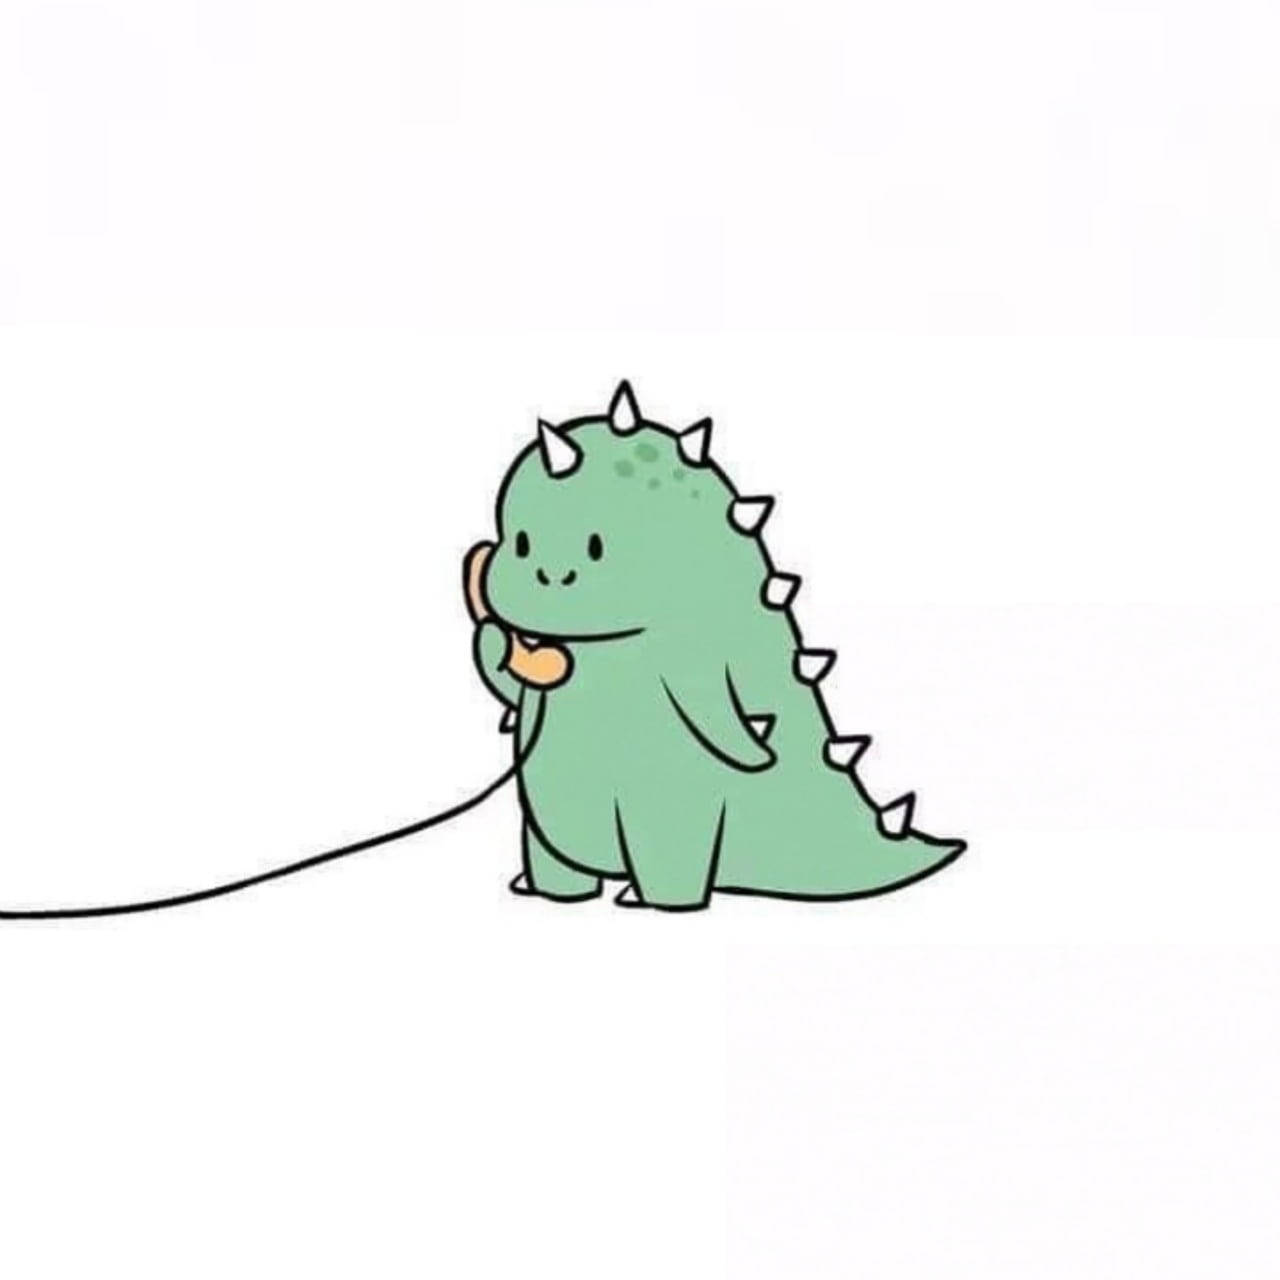 Cute Dinosaur Phone Call Wallpaper